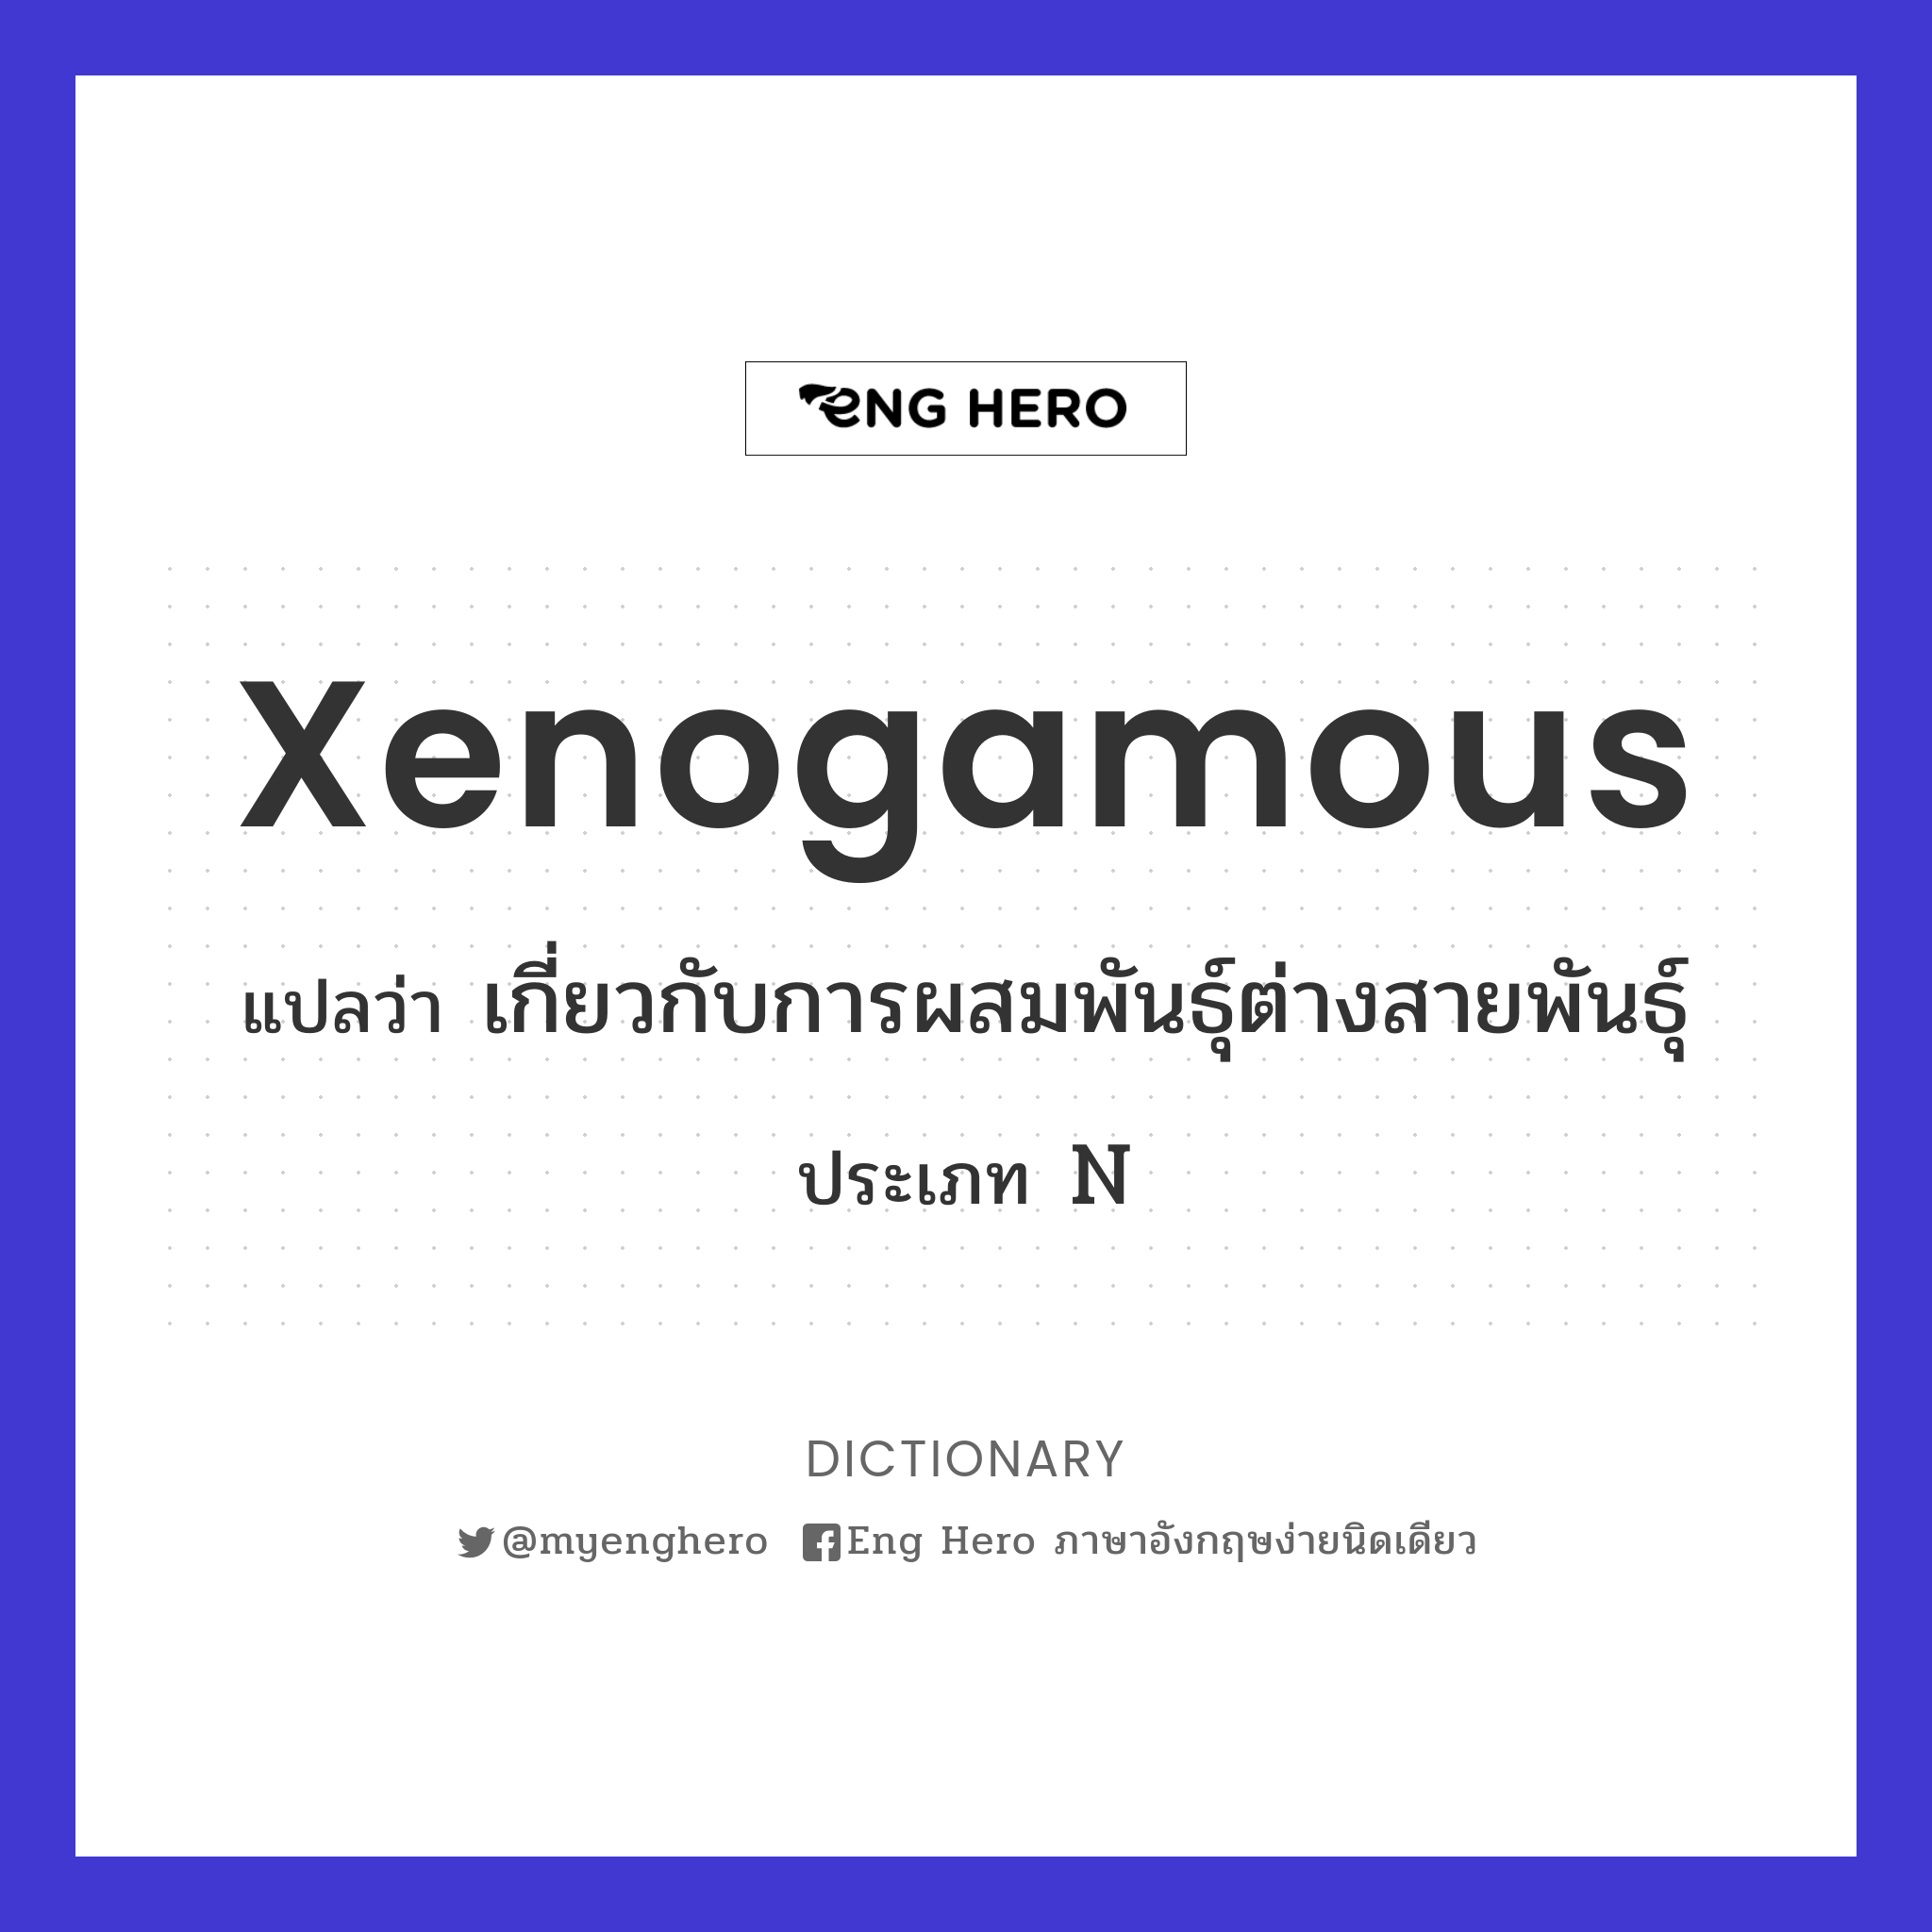 xenogamous